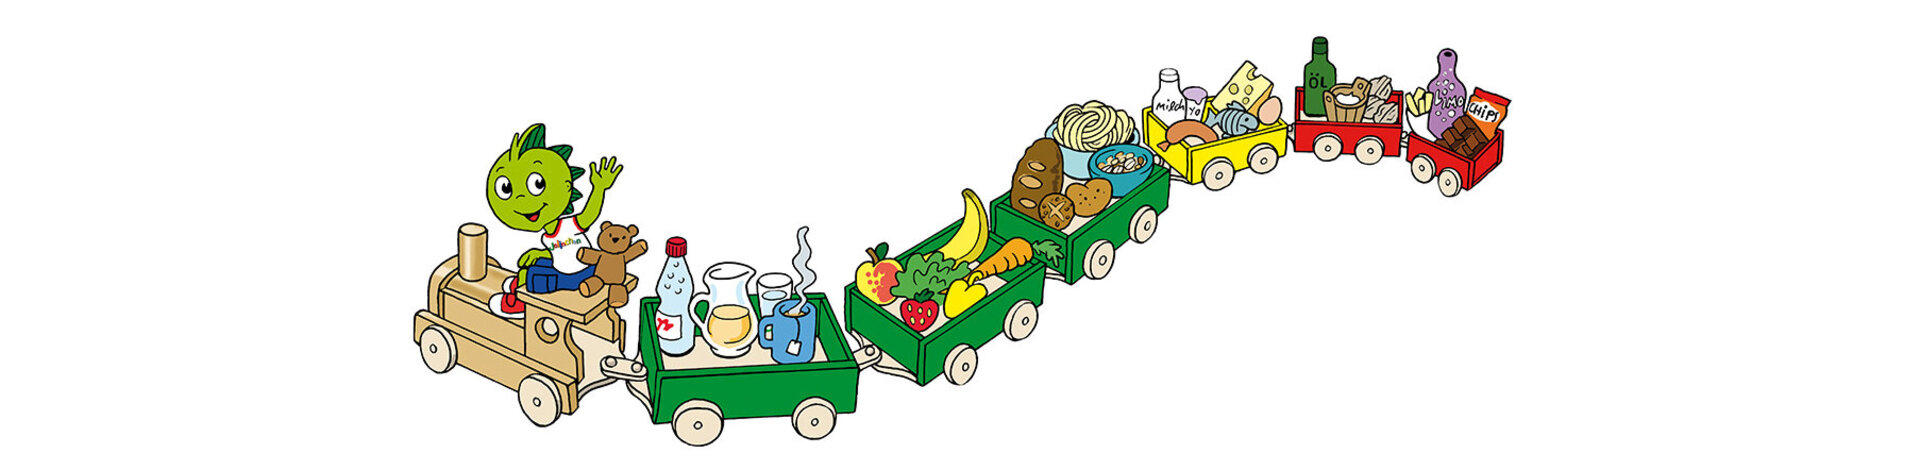 Das Bild zeigt eine bunte Kinder-Lokomotive. Vorne sitzt ein winkender Dino. In den sechs bunten Wagons befinden sich Lebensmittel. Im ersten Wagon stehen Getränke, im zweiten Obst und Gemüse, im dritten Brot und Nudeln, im vierten Milchprodukte und Fisch, im fünften Öl und Fette und im sechsten Schokolade und Süßigkeiten.  